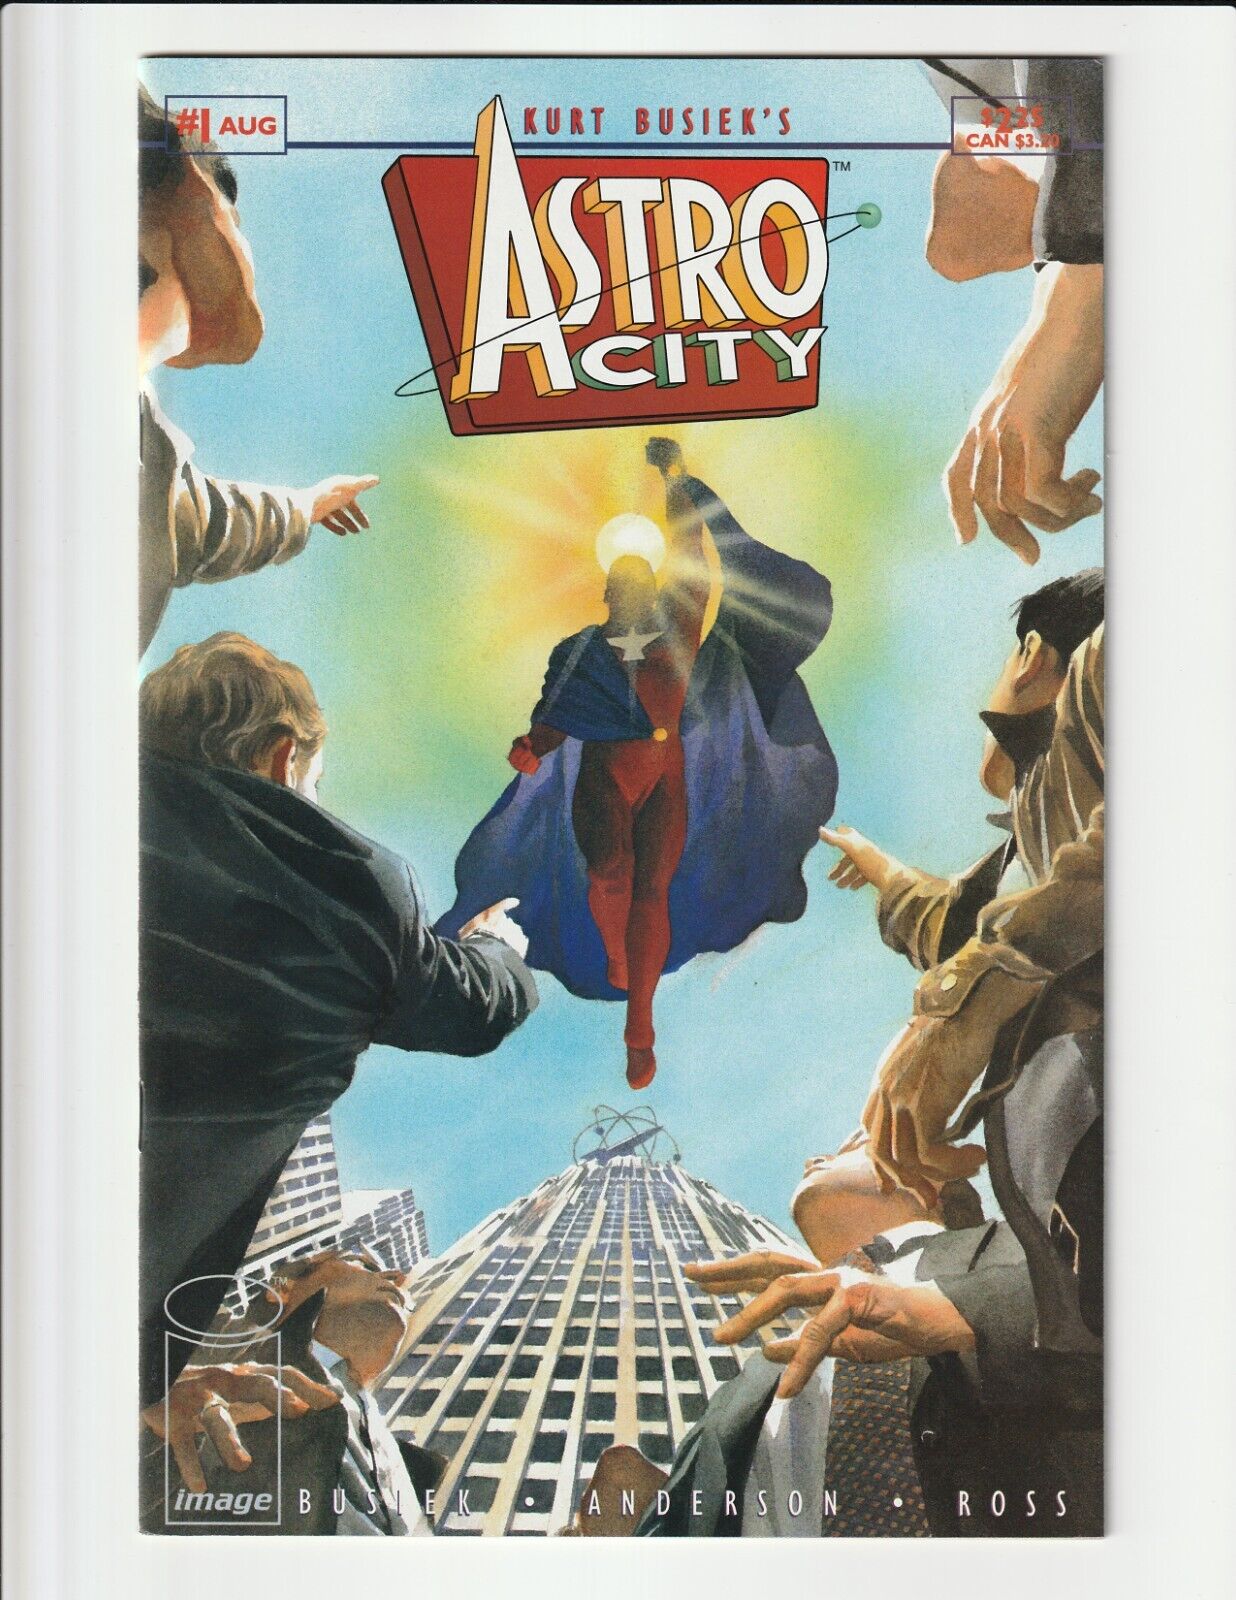 ASTRO CITY #1 (1995) NM FIRST APPEARANCE SAMARITAN ALEX ROSS KURT BUSIEK IMAGE